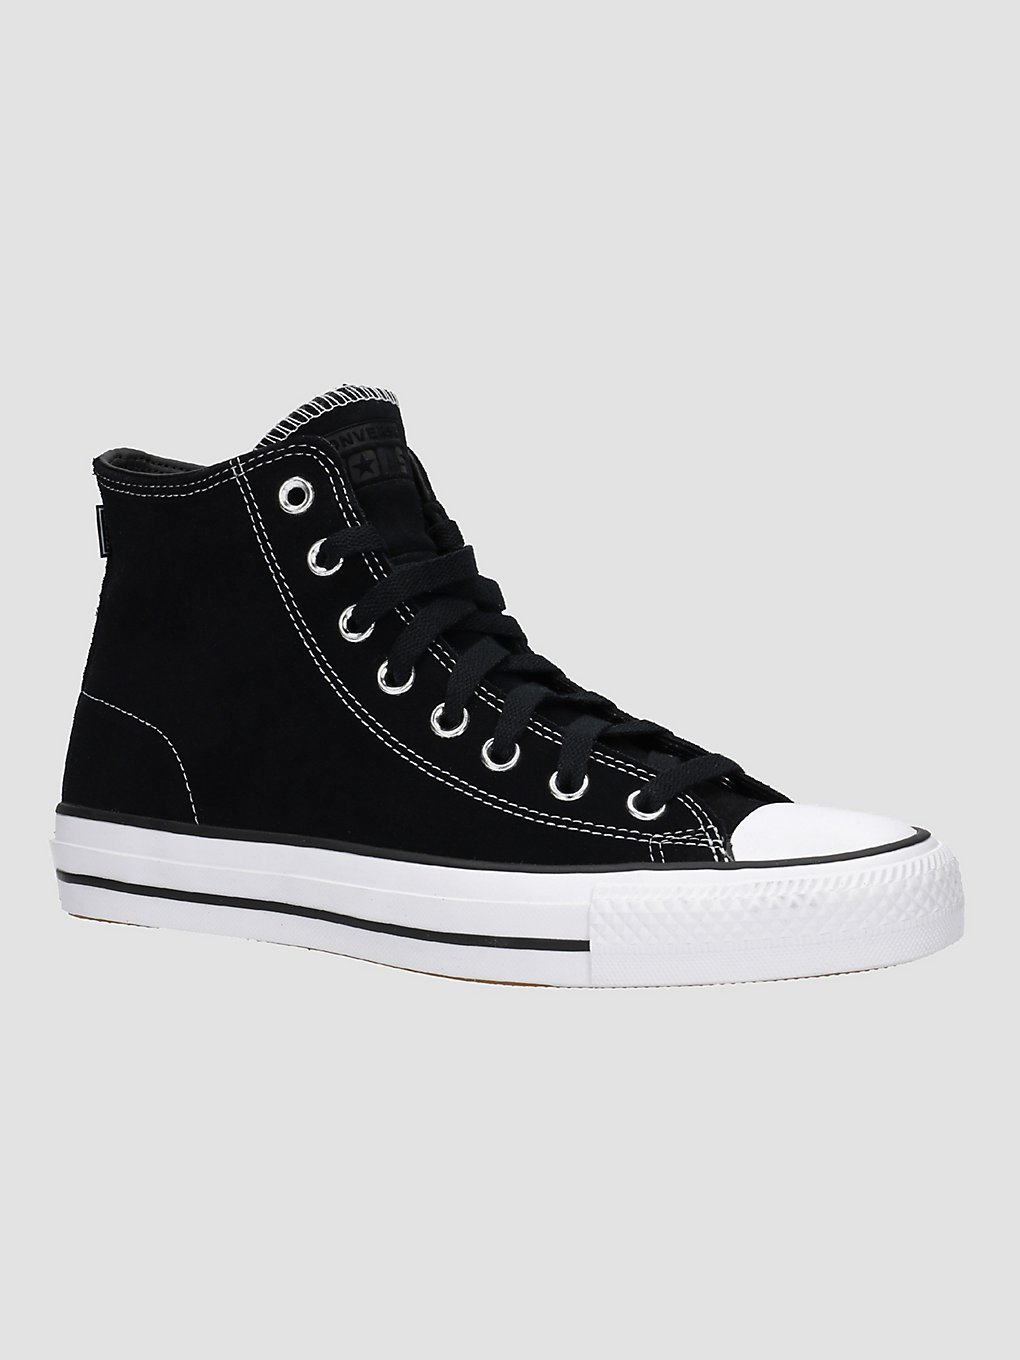 Converse Chuck Taylor All Star Pro Chaussures de skate noir